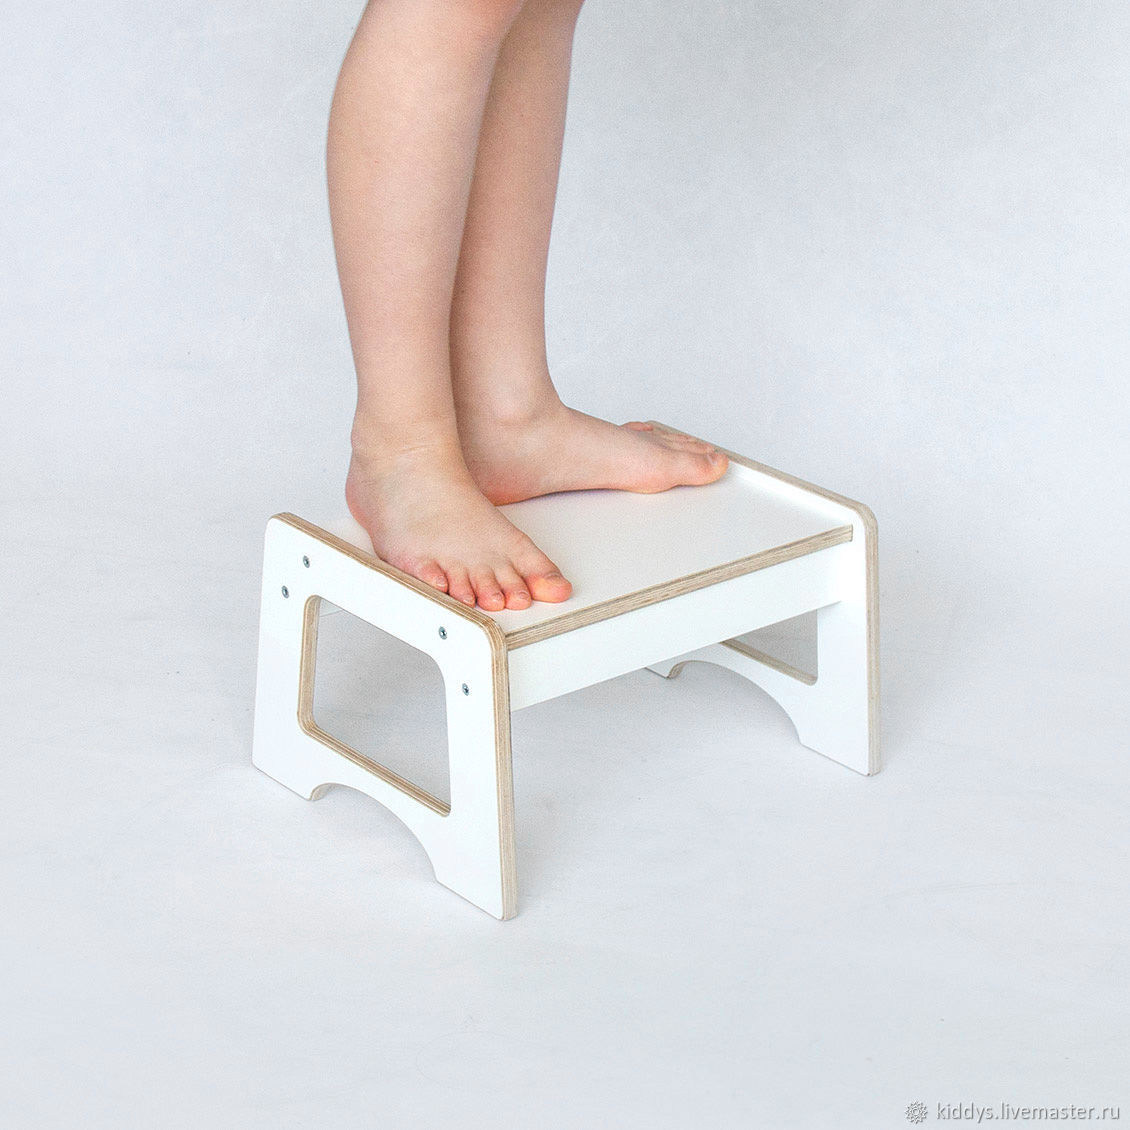  подставка ступенька для малышей, деревянная, белая  в .